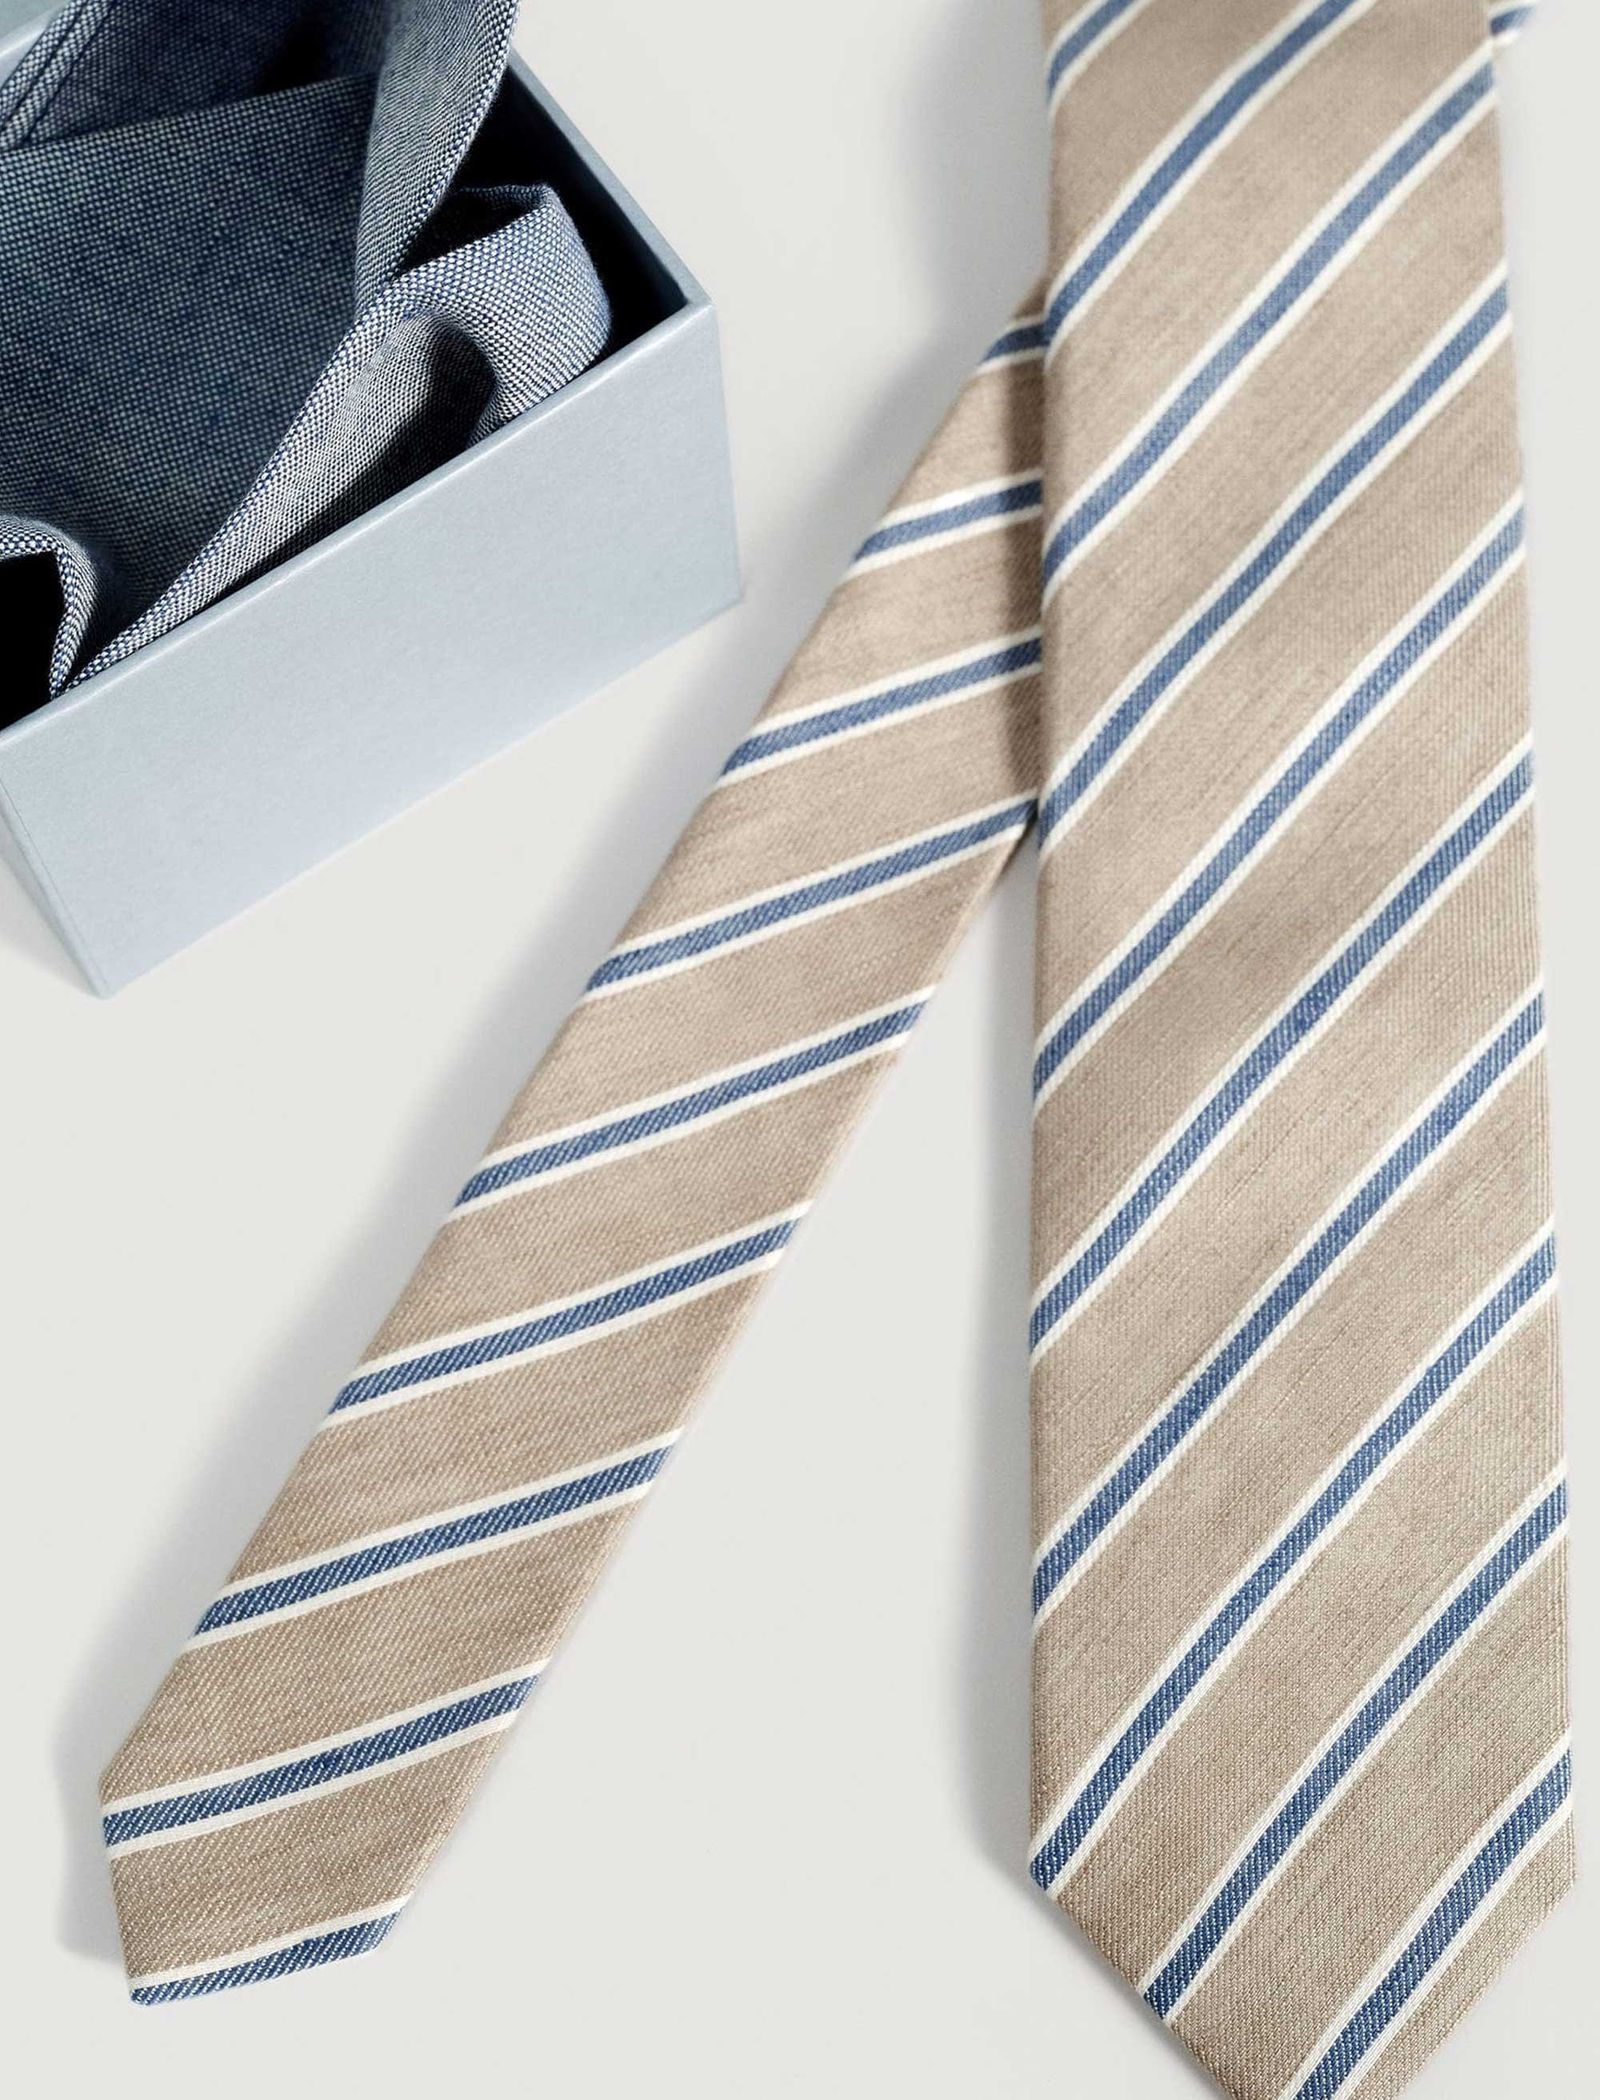 کراوات طرح دار مردانه - مانگو تک سایز - آبي و بژ - 5